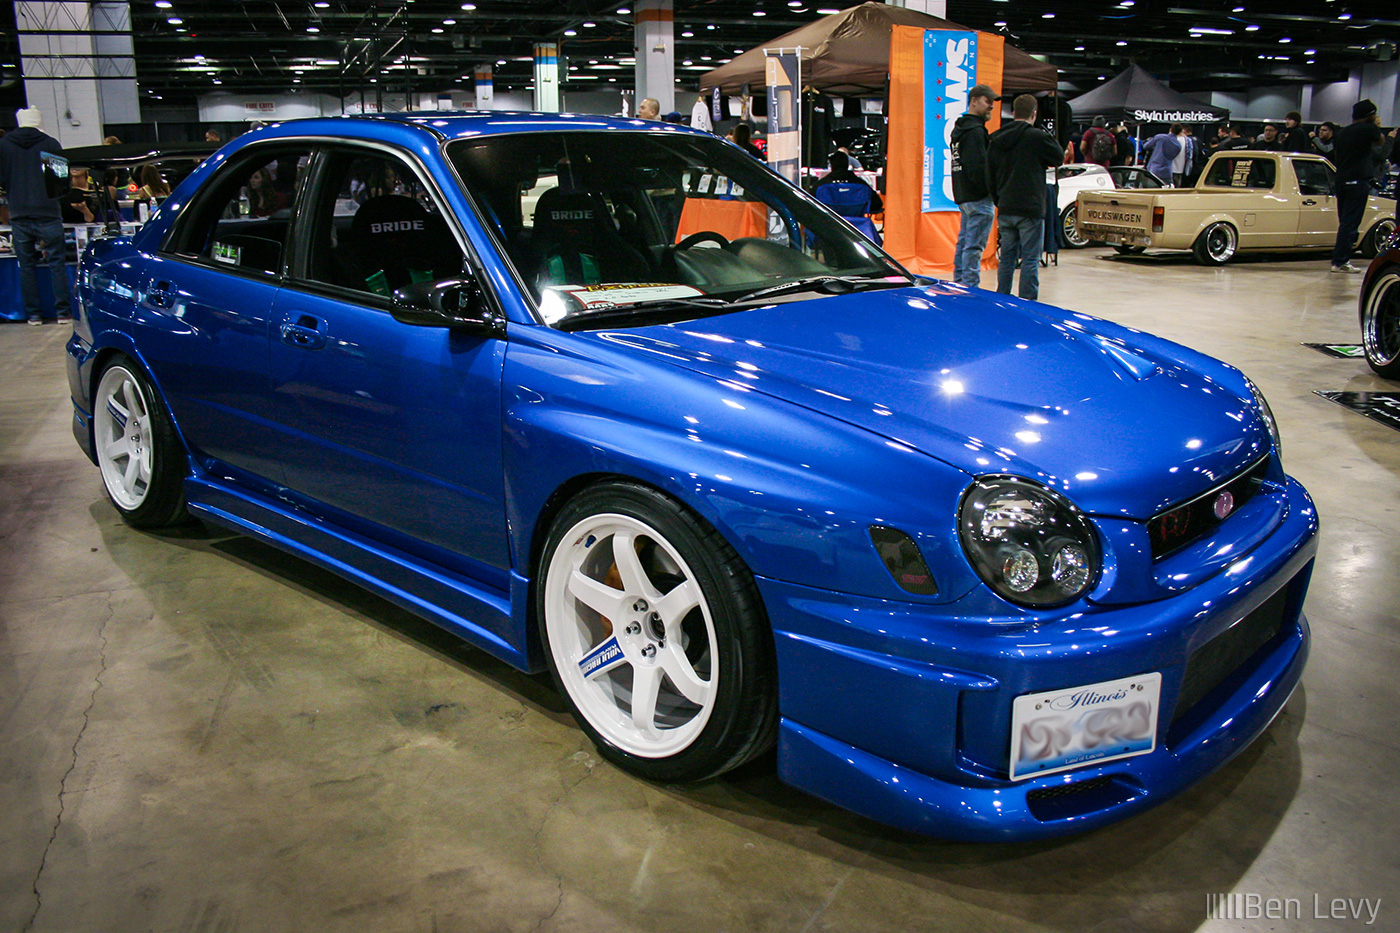 Blue 2003 Subaru WRX